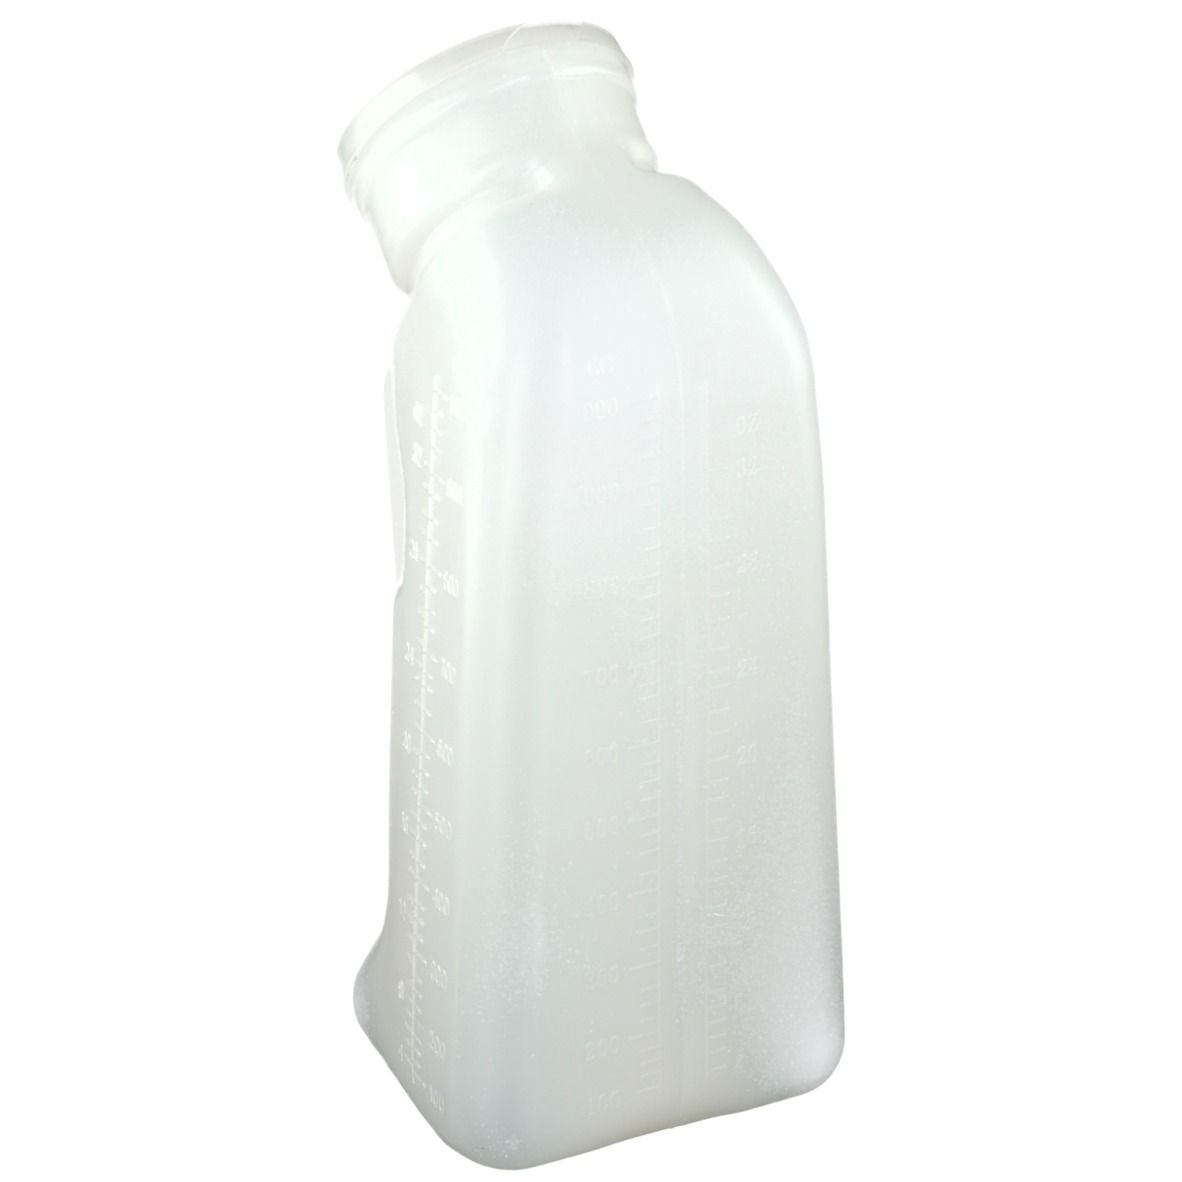 Urinflasche mit Griff und Deckel für Männer 1 Liter